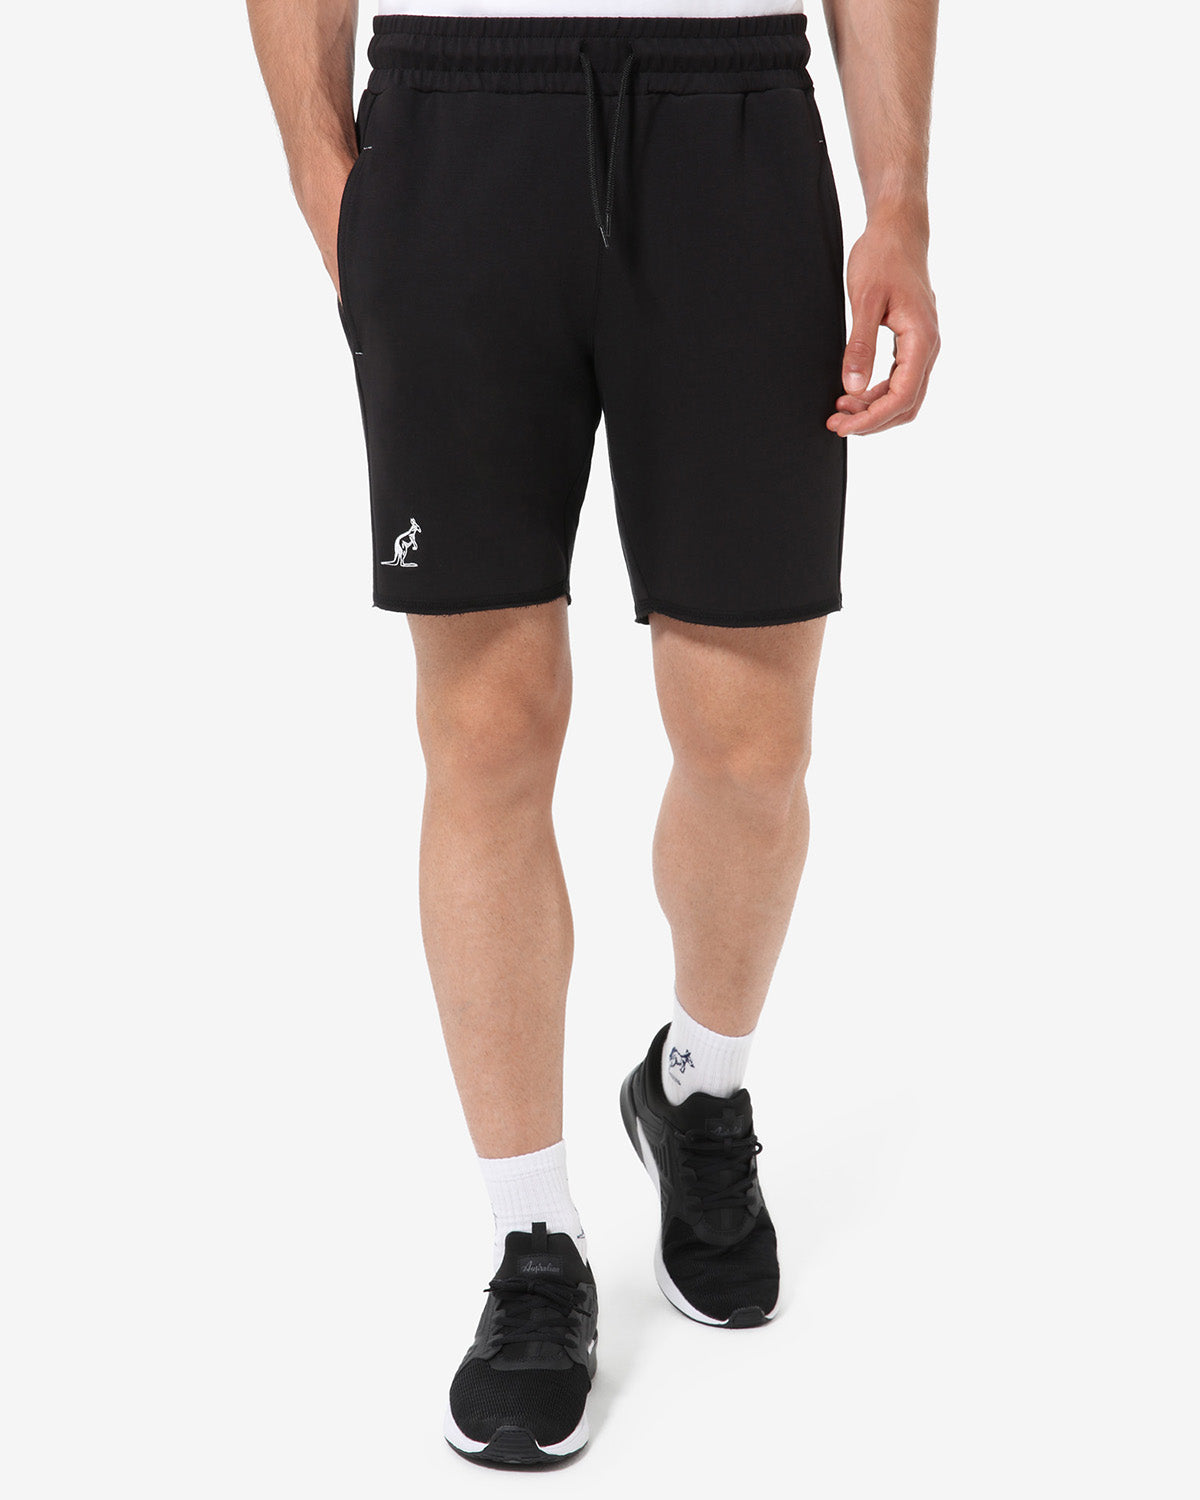 Elastic Fleece Short: Australian Sportswear